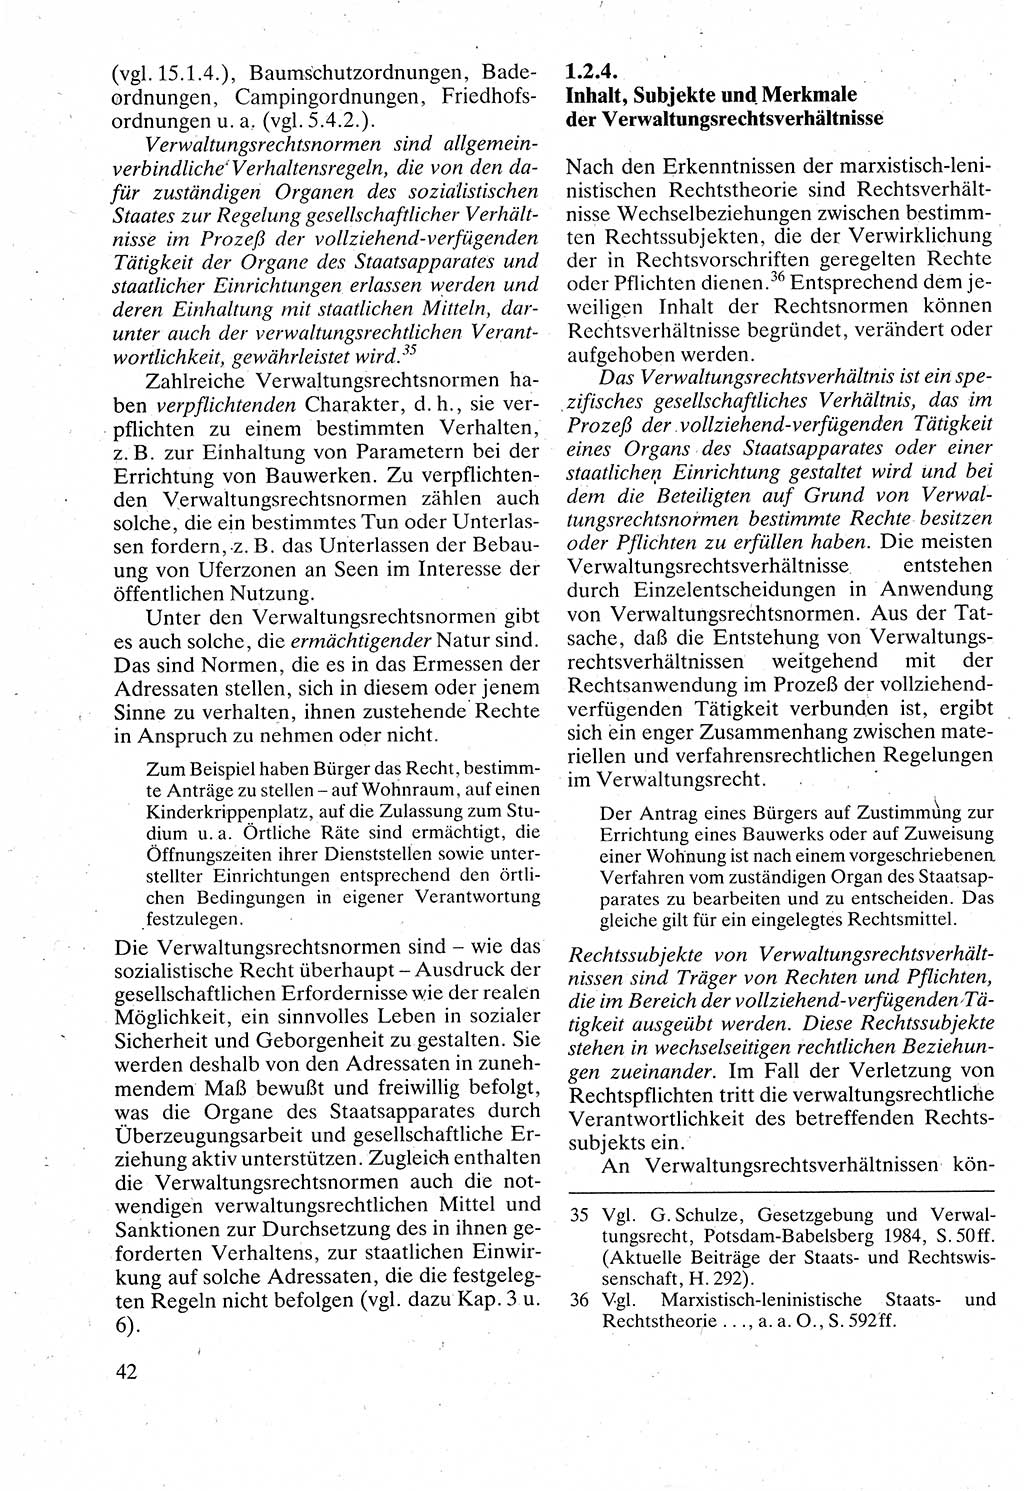 Verwaltungsrecht [Deutsche Demokratische Republik (DDR)], Lehrbuch 1988, Seite 42 (Verw.-R. DDR Lb. 1988, S. 42)